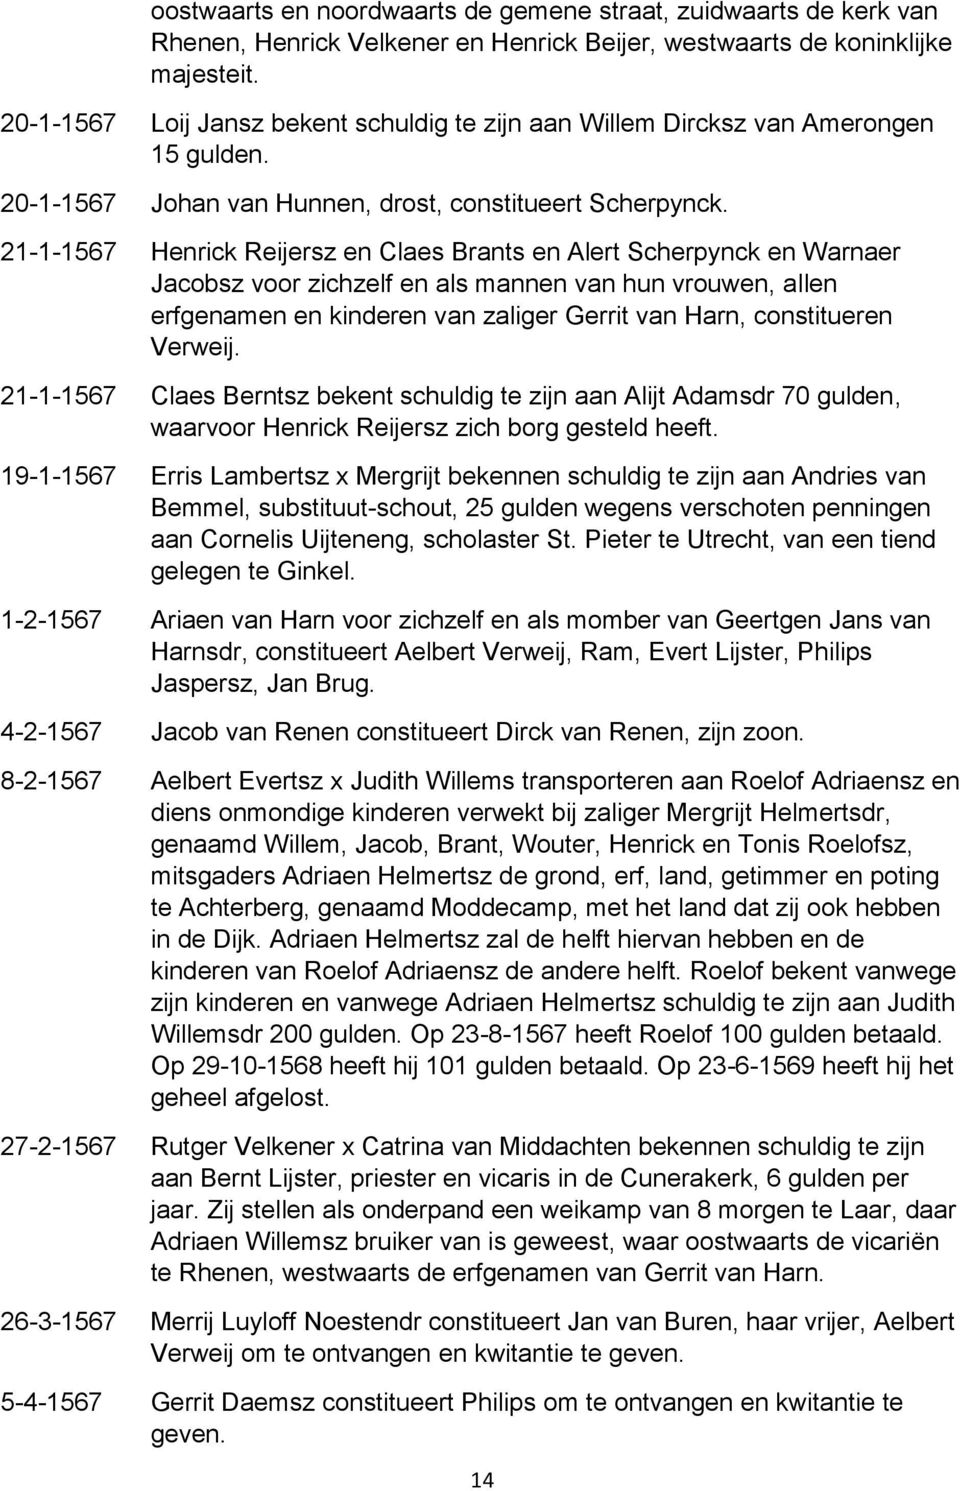 21-1-1567 Henrick Reijersz en Claes Brants en Alert Scherpynck en Warnaer Jacobsz voor zichzelf en als mannen van hun vrouwen, allen erfgenamen en kinderen van zaliger Gerrit van Harn, constitueren